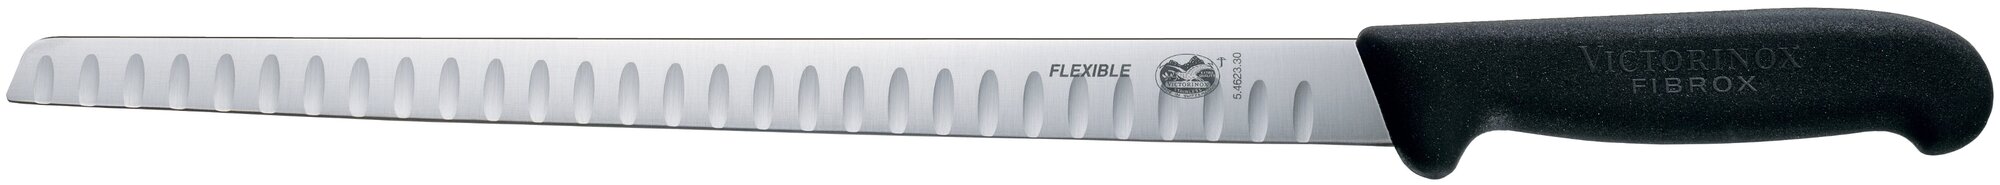 Нож кухонный Victorinox Fibrox (5.4623.30) стальной филейный для рыбы лезв.300мм рифленый край черный